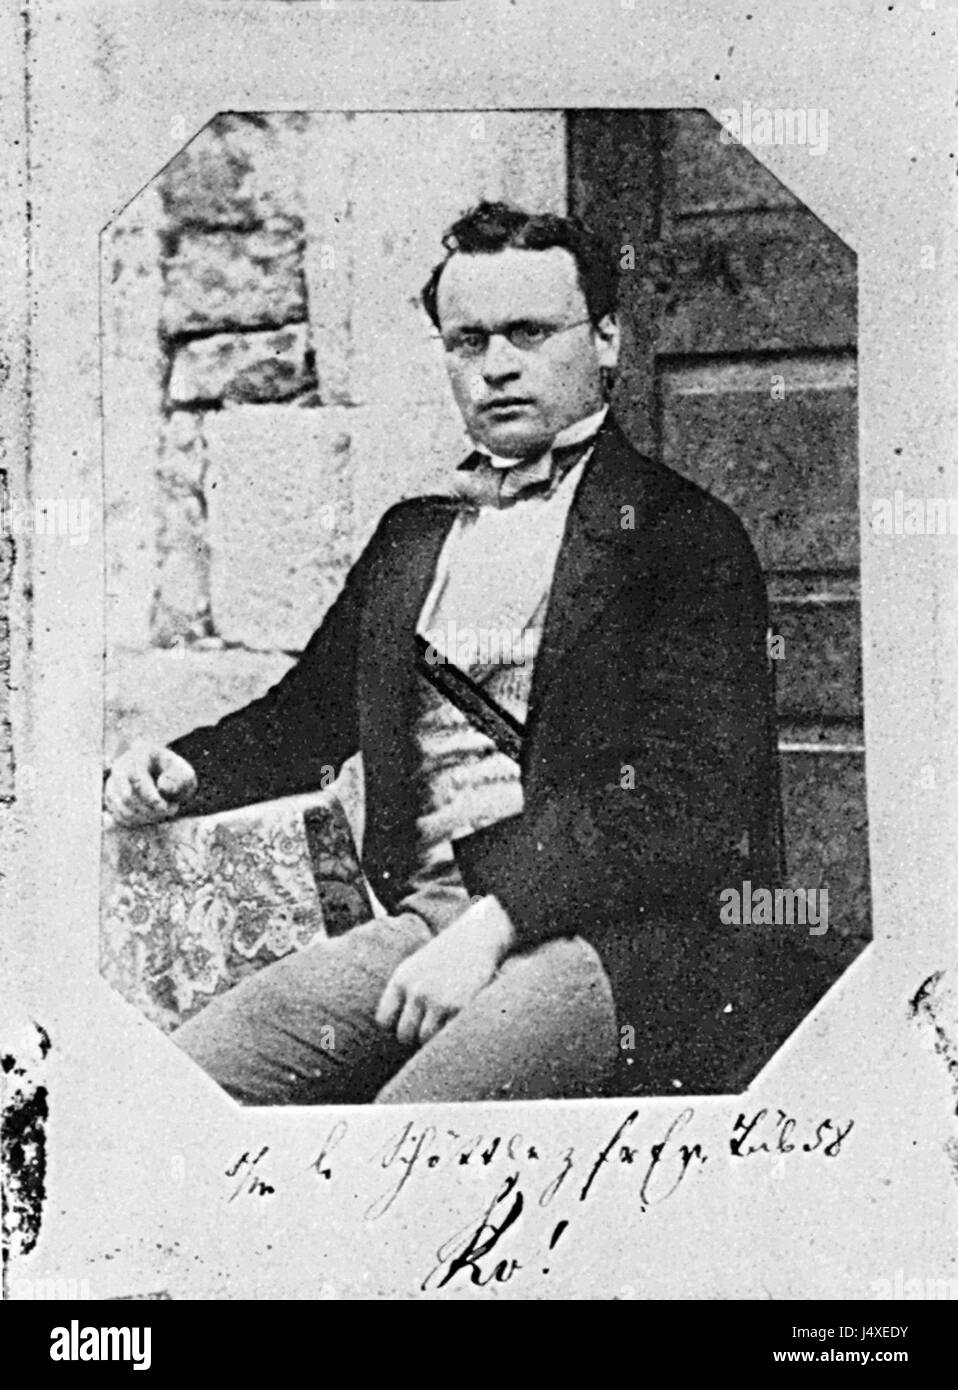 Unbekannter Fotograf Wieland Hopf Salzpapierabzug um 1858 Stock Photo